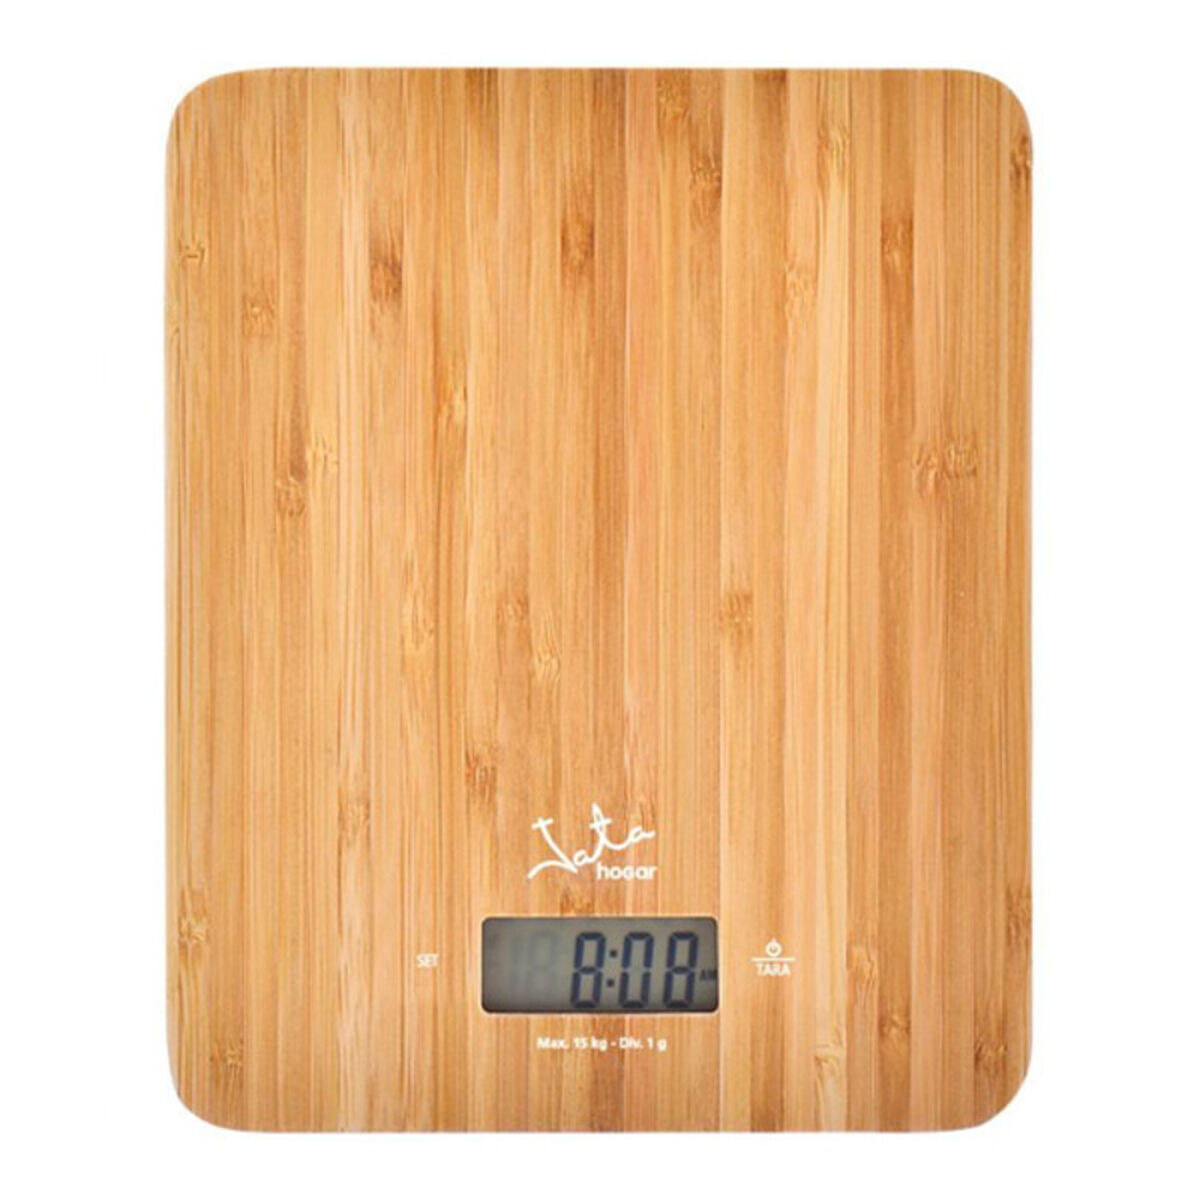 Digital Kitchen Scale Bambú JATA 720 * Brown